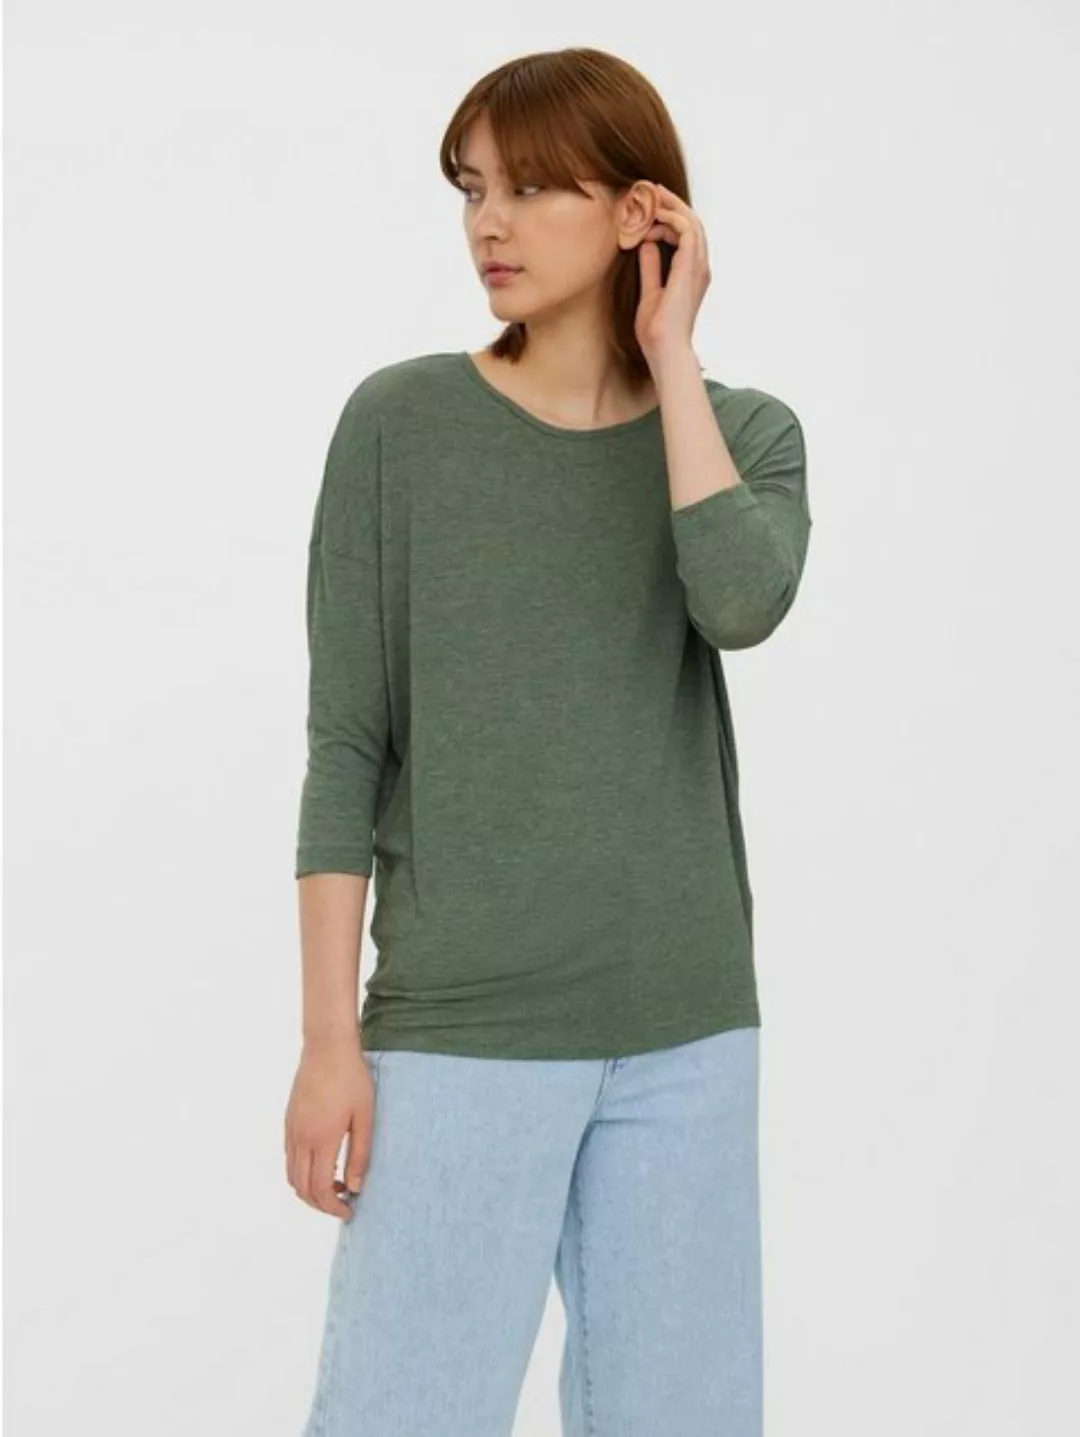 Vero Moda T-Shirt Einfarbiges 3/4 Arm Shirt Rundhals Langarm Top Oberteil V günstig online kaufen